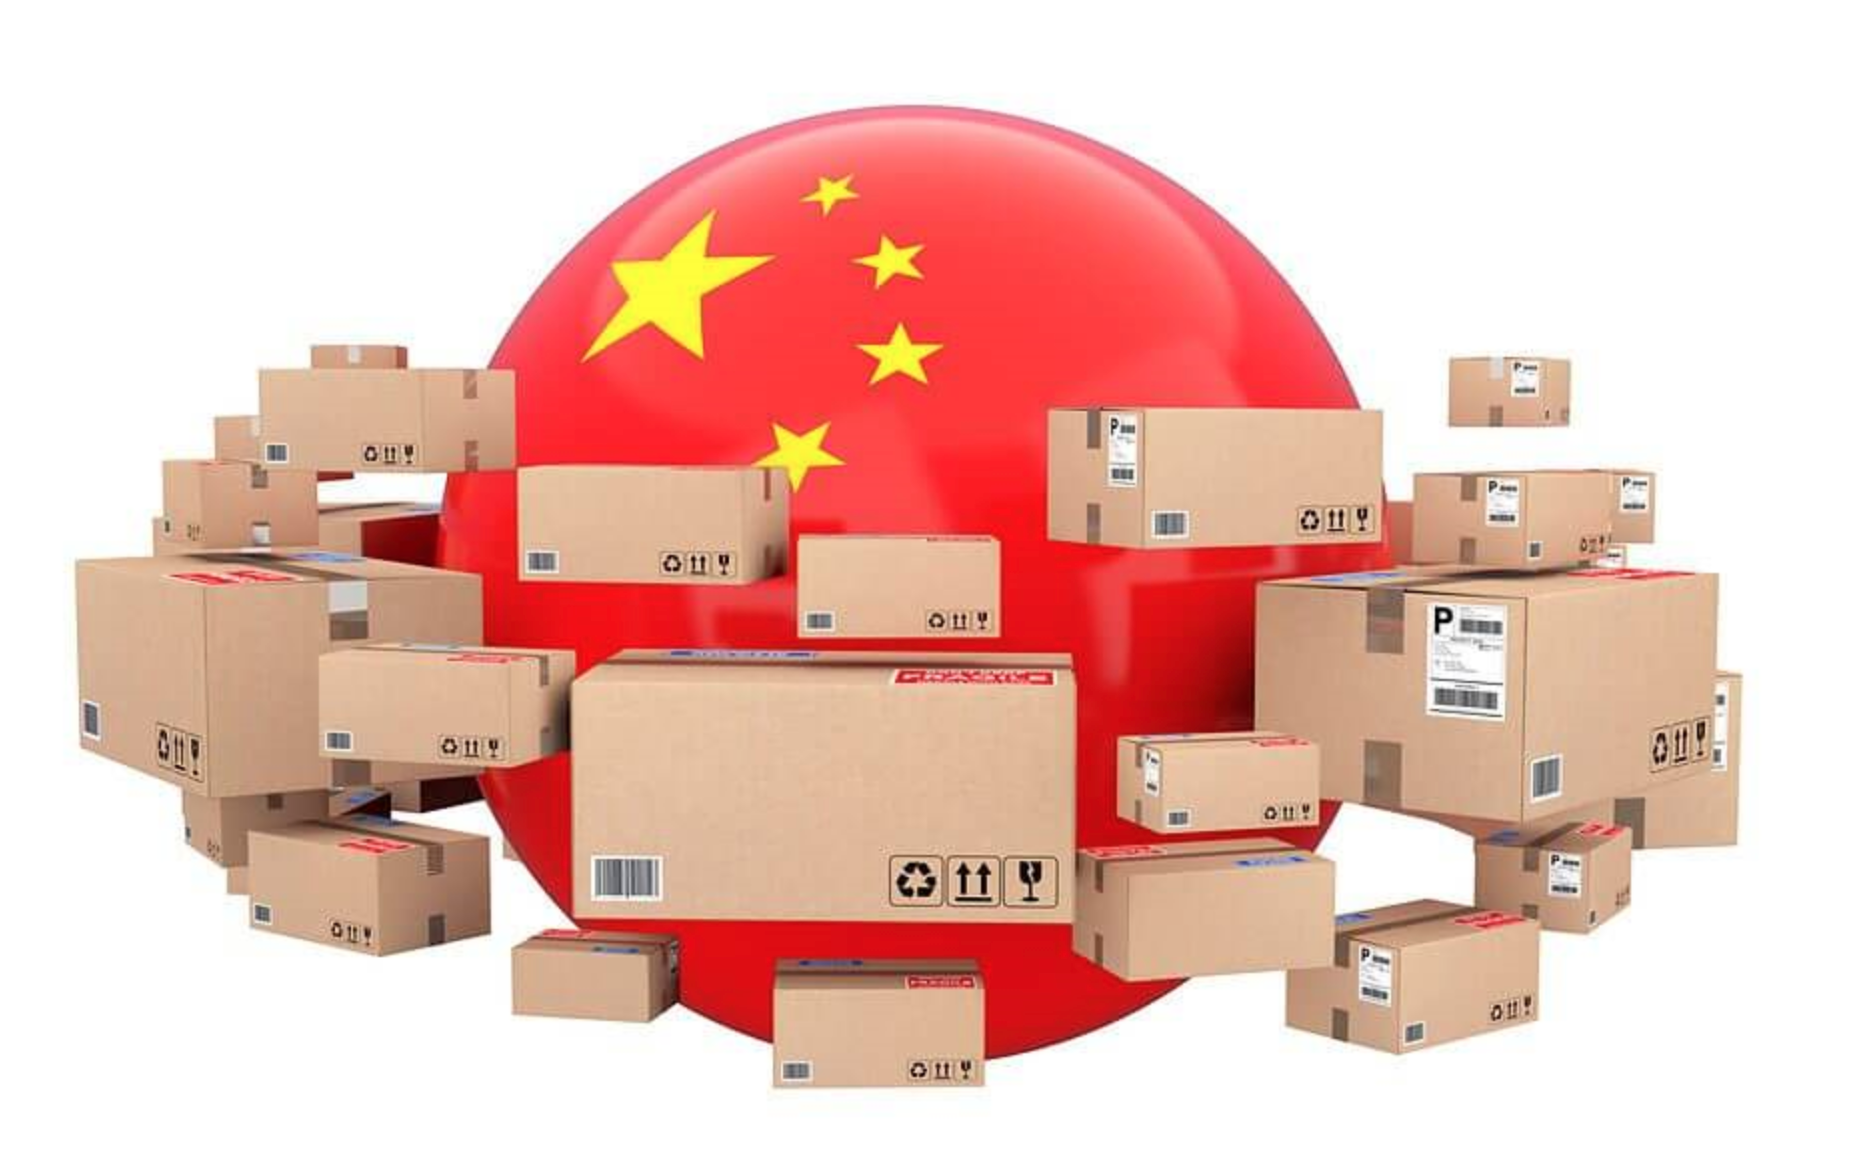 Chính sách  “Zero-Covid-19” của Trung Quốc ảnh hưởng thế nào đến hoạt động xuất nhập khẩu ở cửa khẩu phía Bắc?